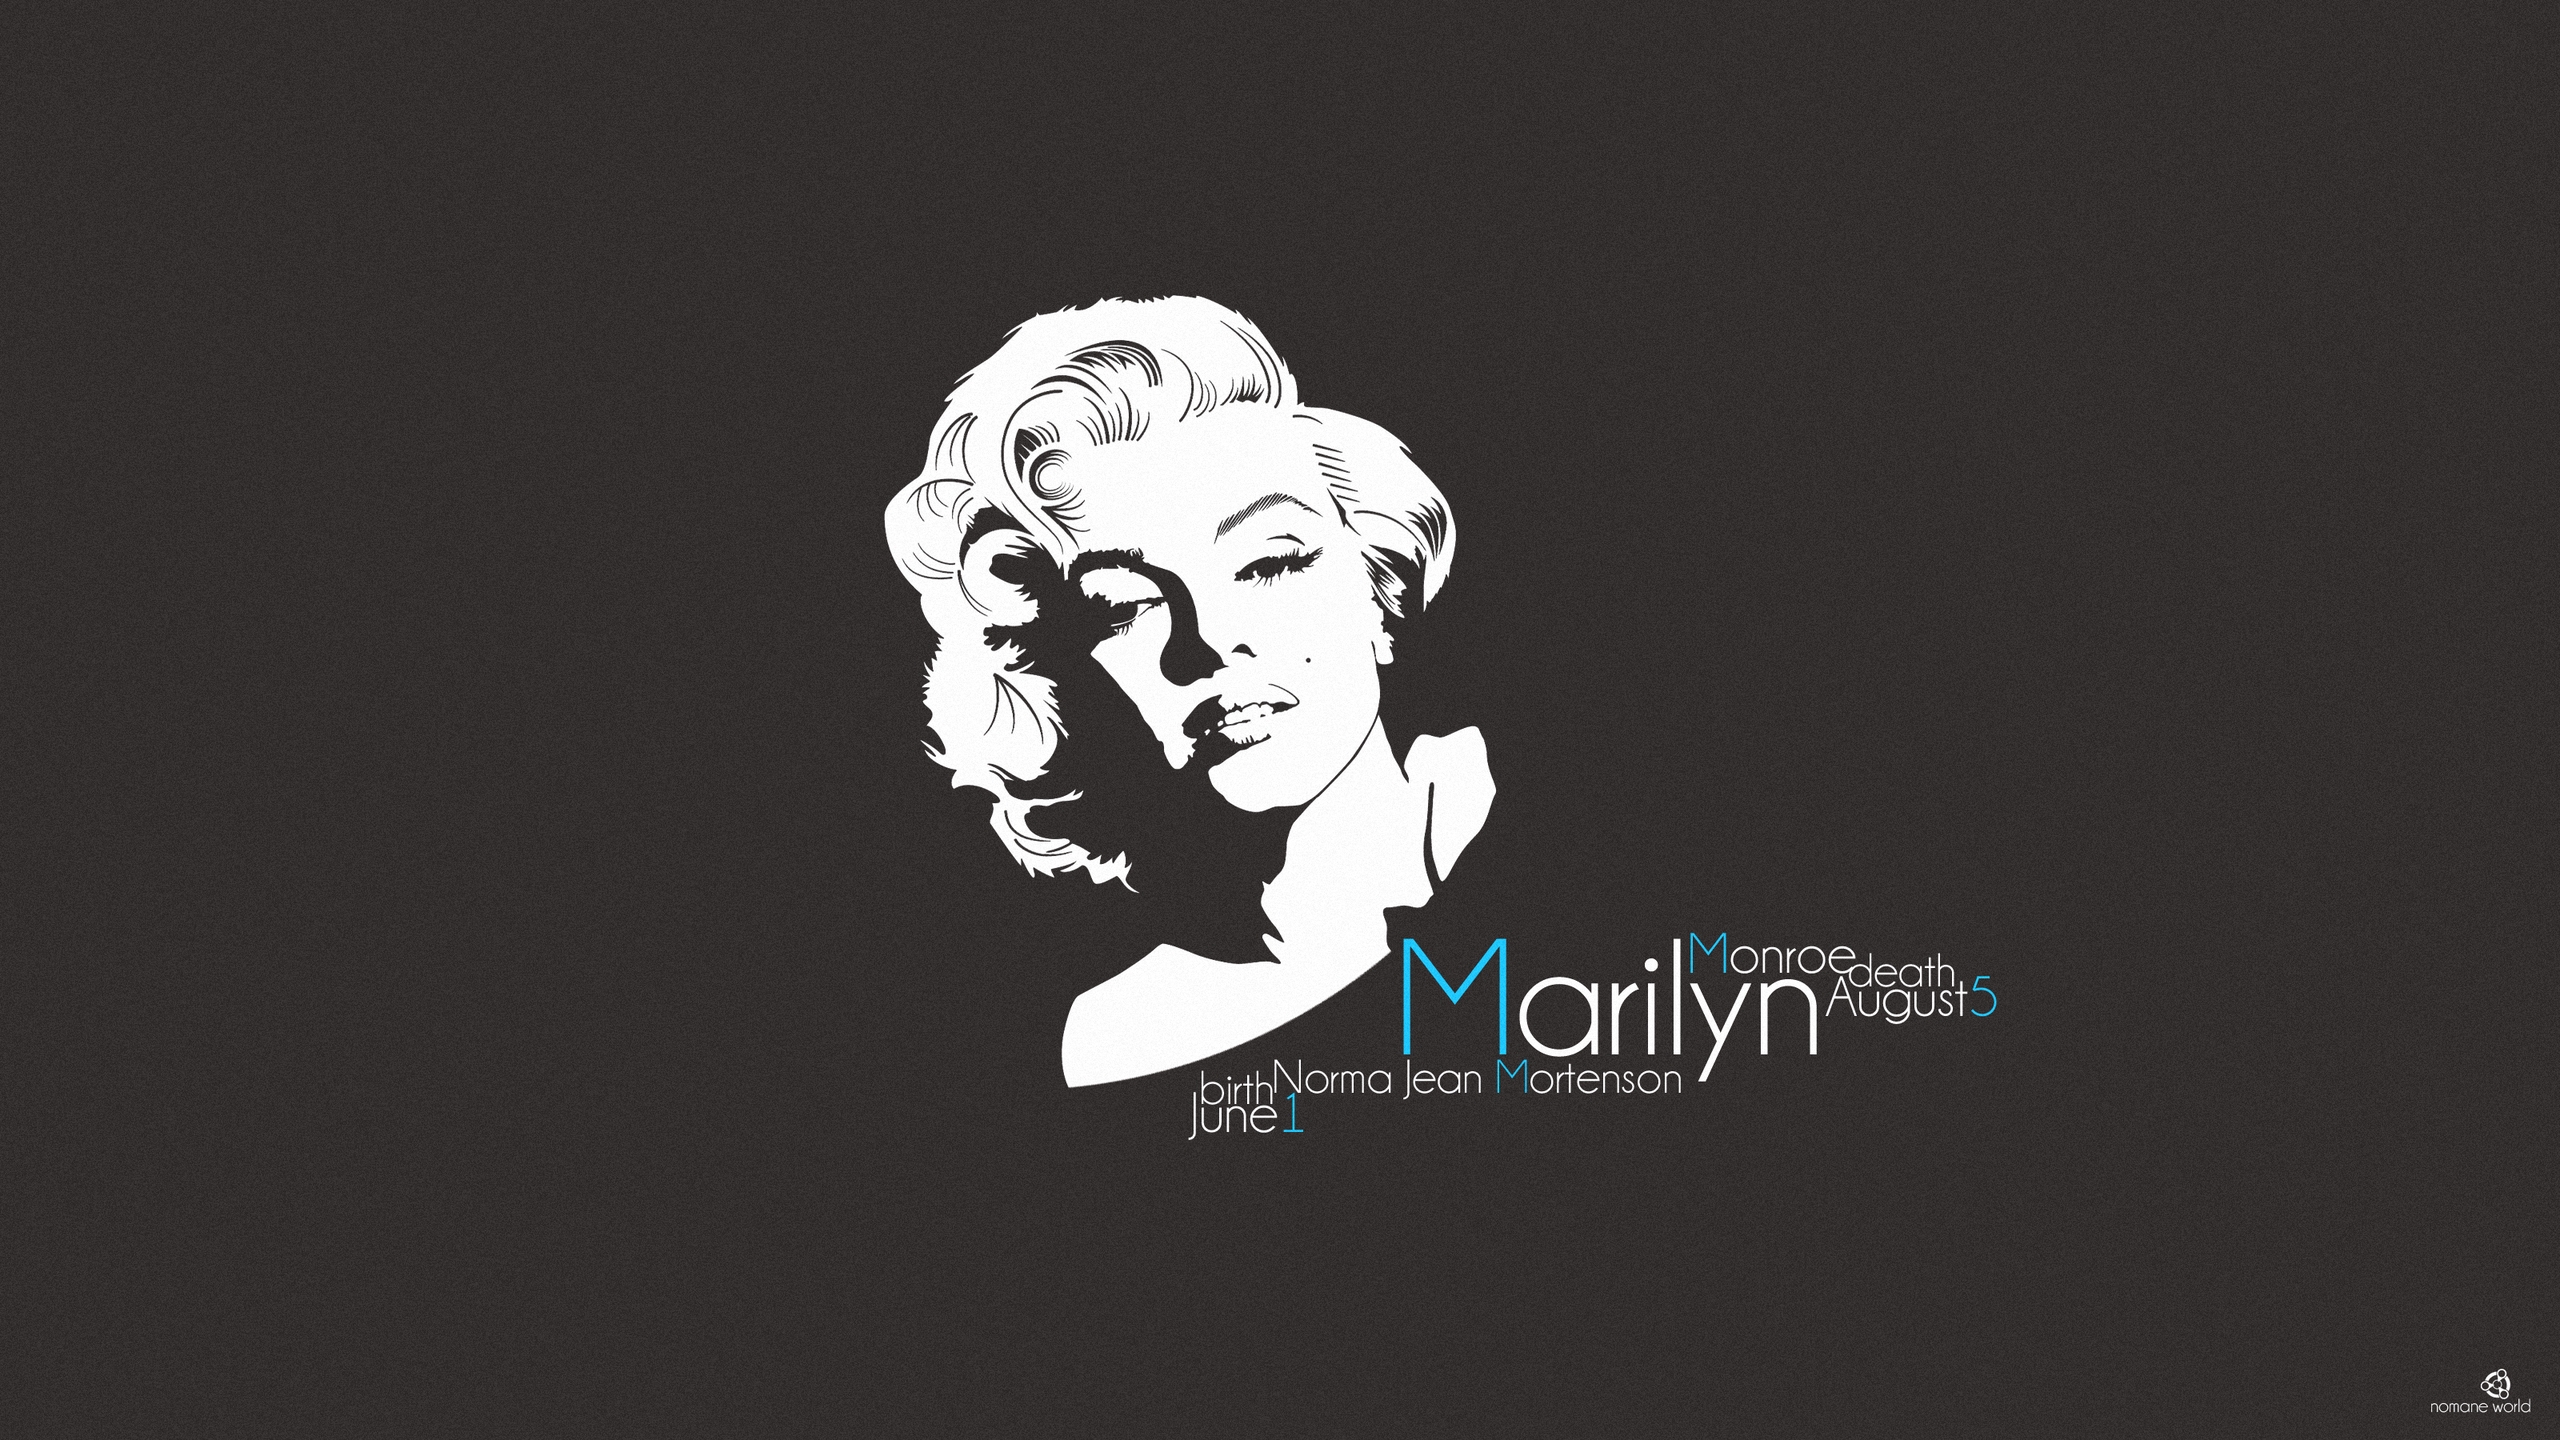 Marilyn Monroe for 2560x1440 HDTV resolution